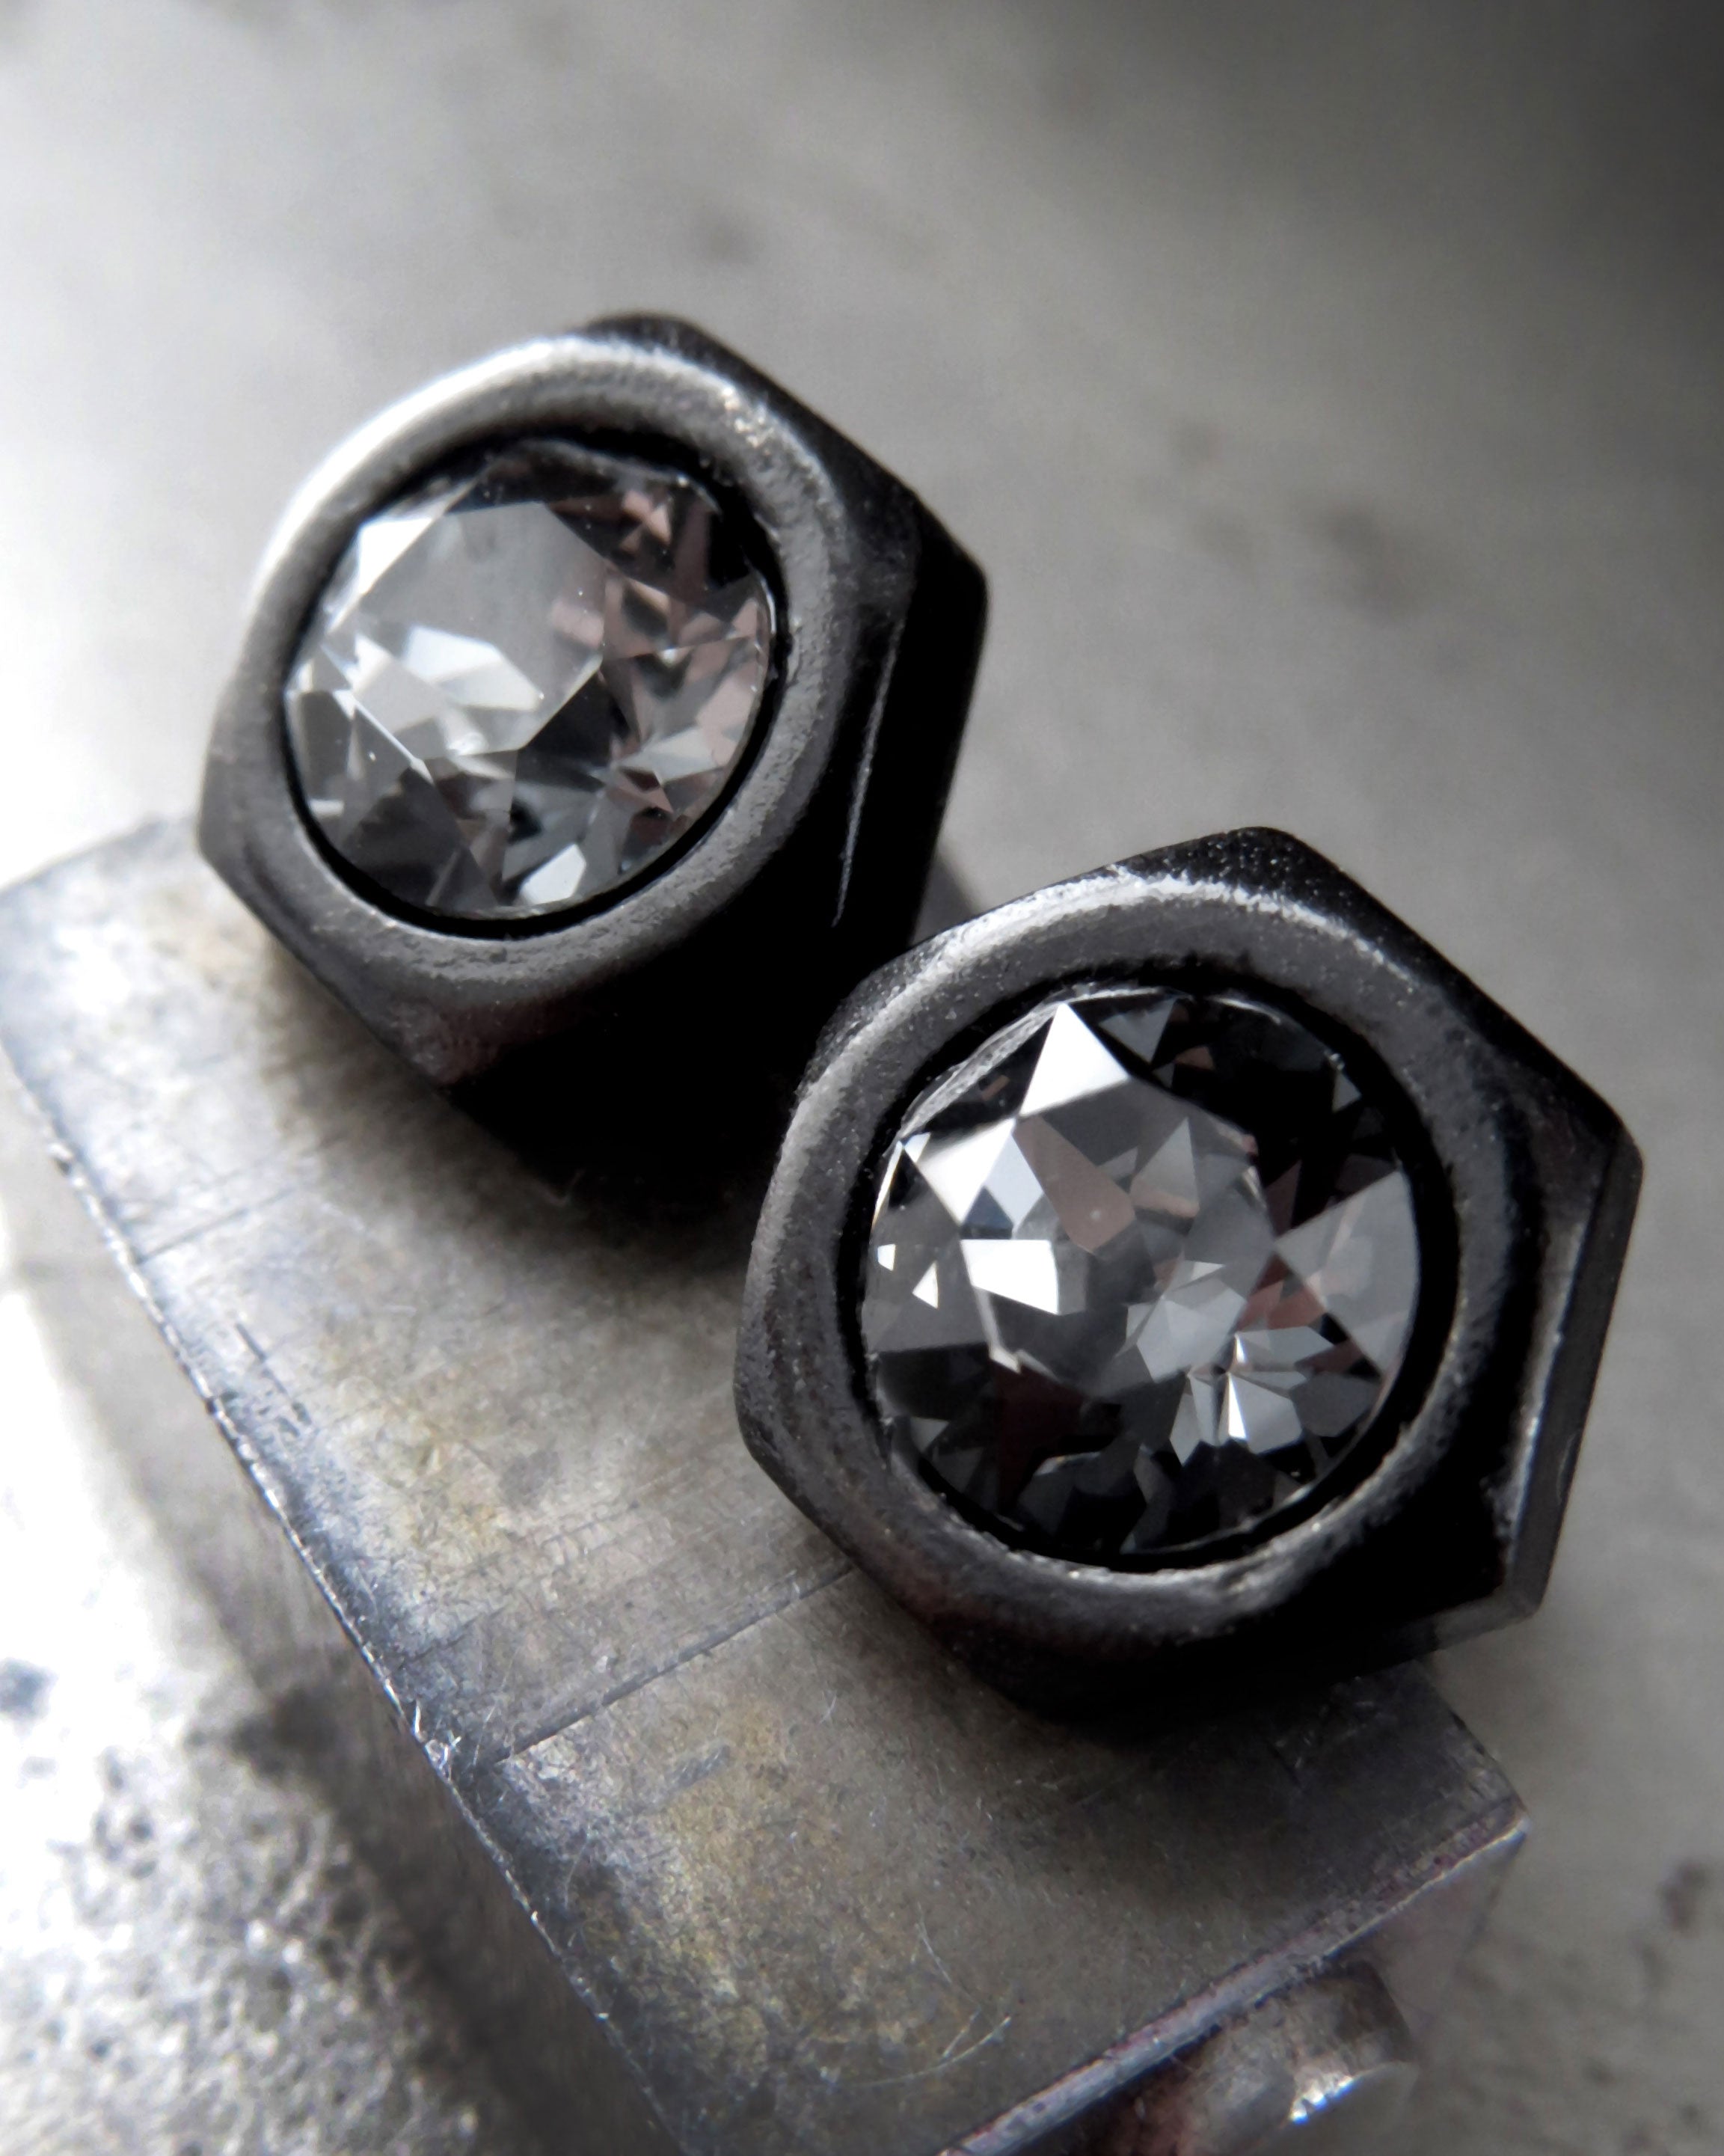 Black Hex Nut Stud Earrings with Black Crystal